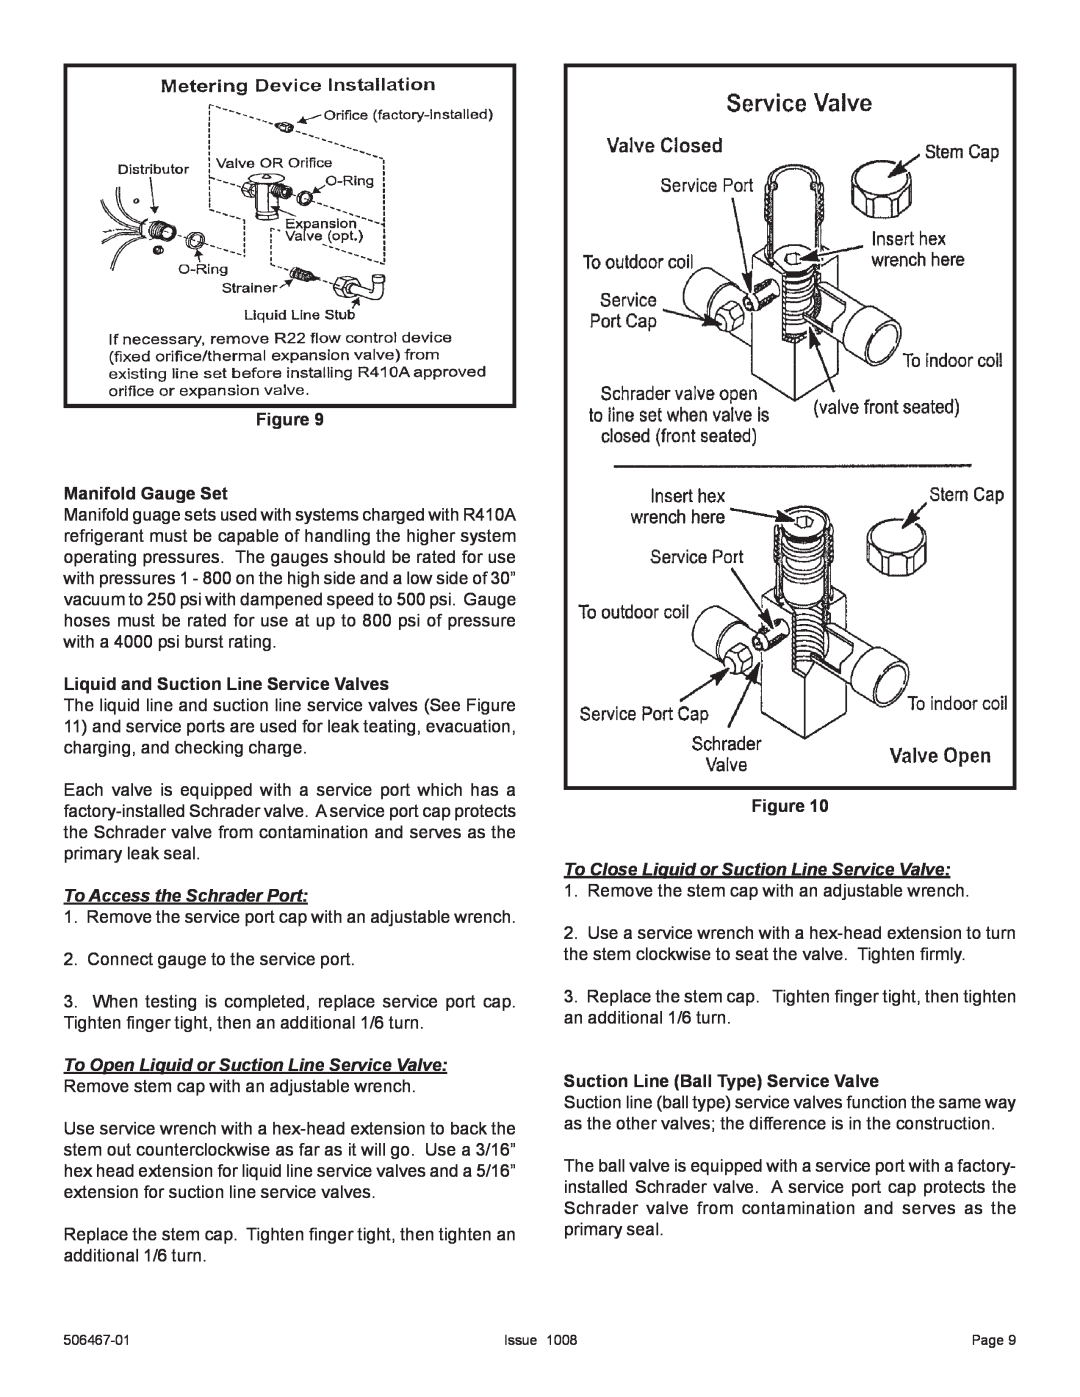 Allied Air Enterprises 4AC16LT manual Figure Manifold Gauge Set, Liquid and Suction Line Service Valves 